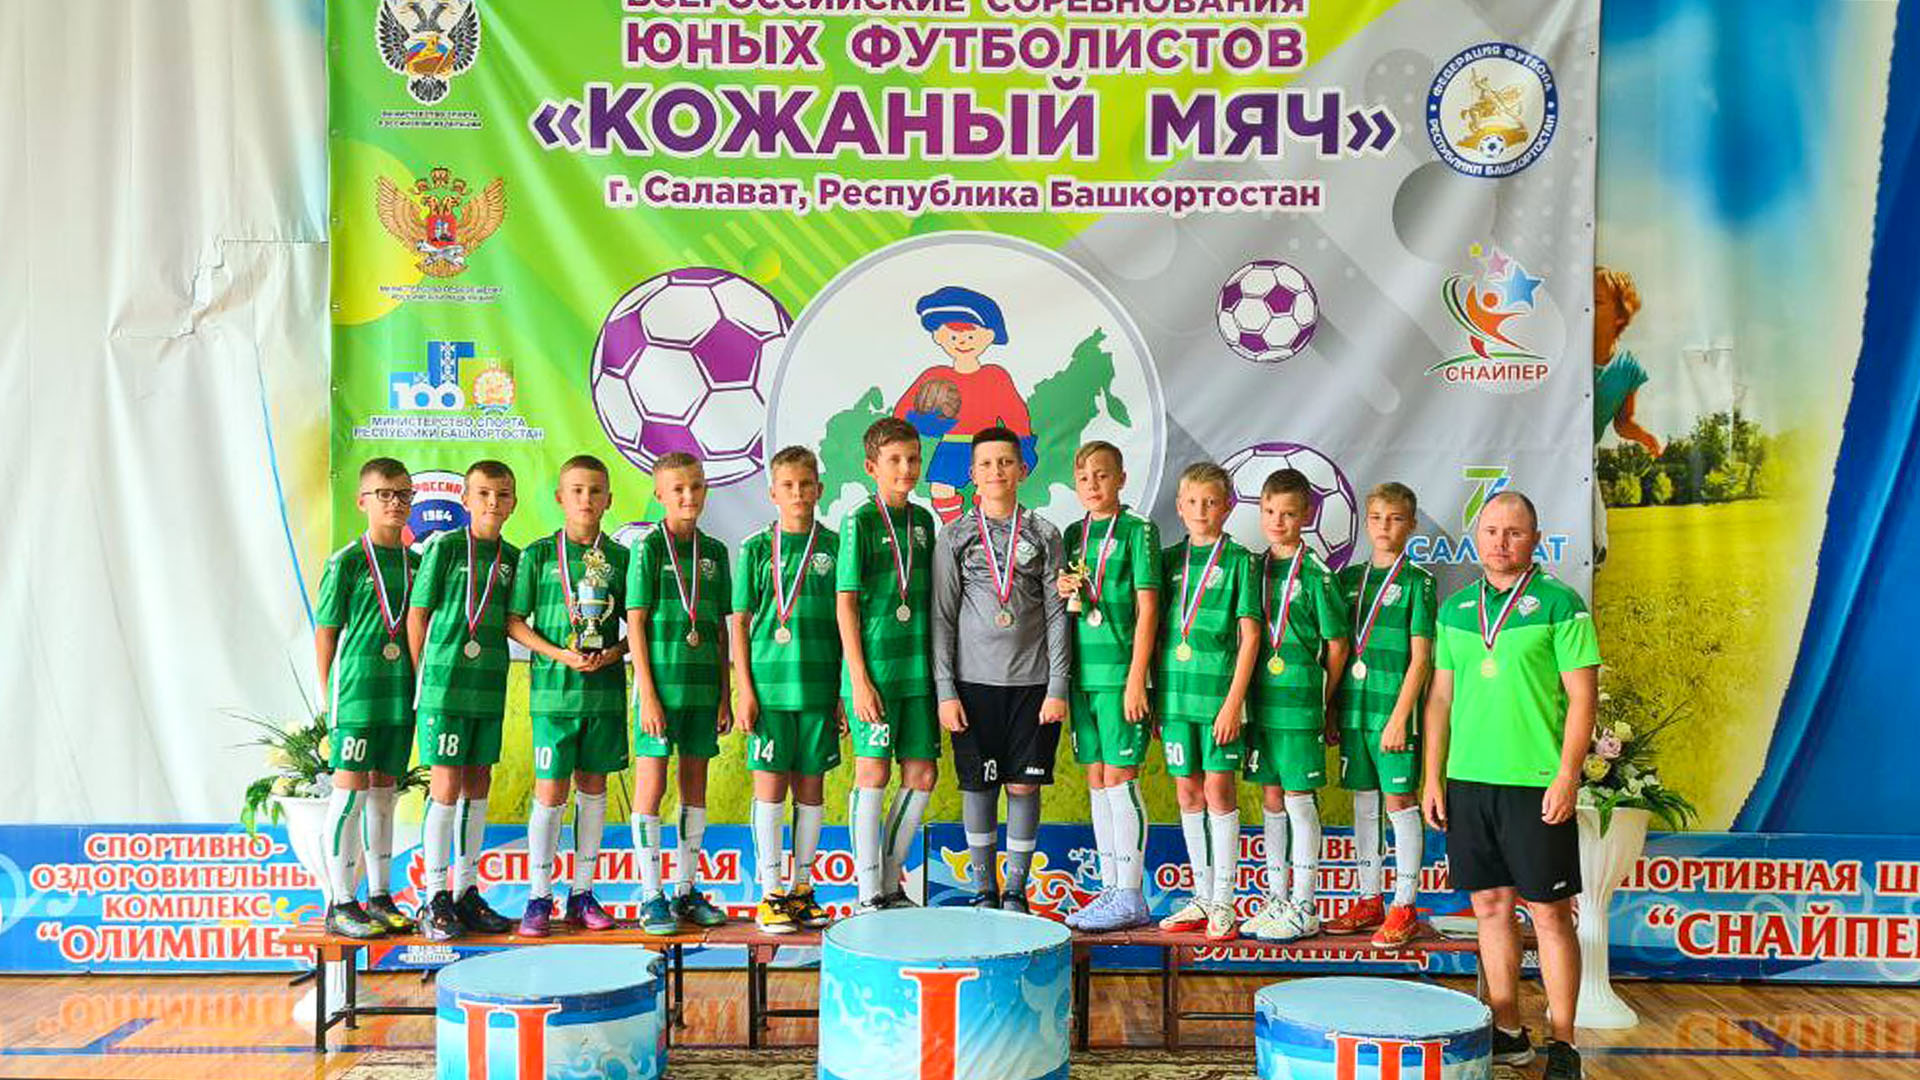 Футболисты из Комсомольска одержали победу на Всероссийском турнире «Кожаный мяч»